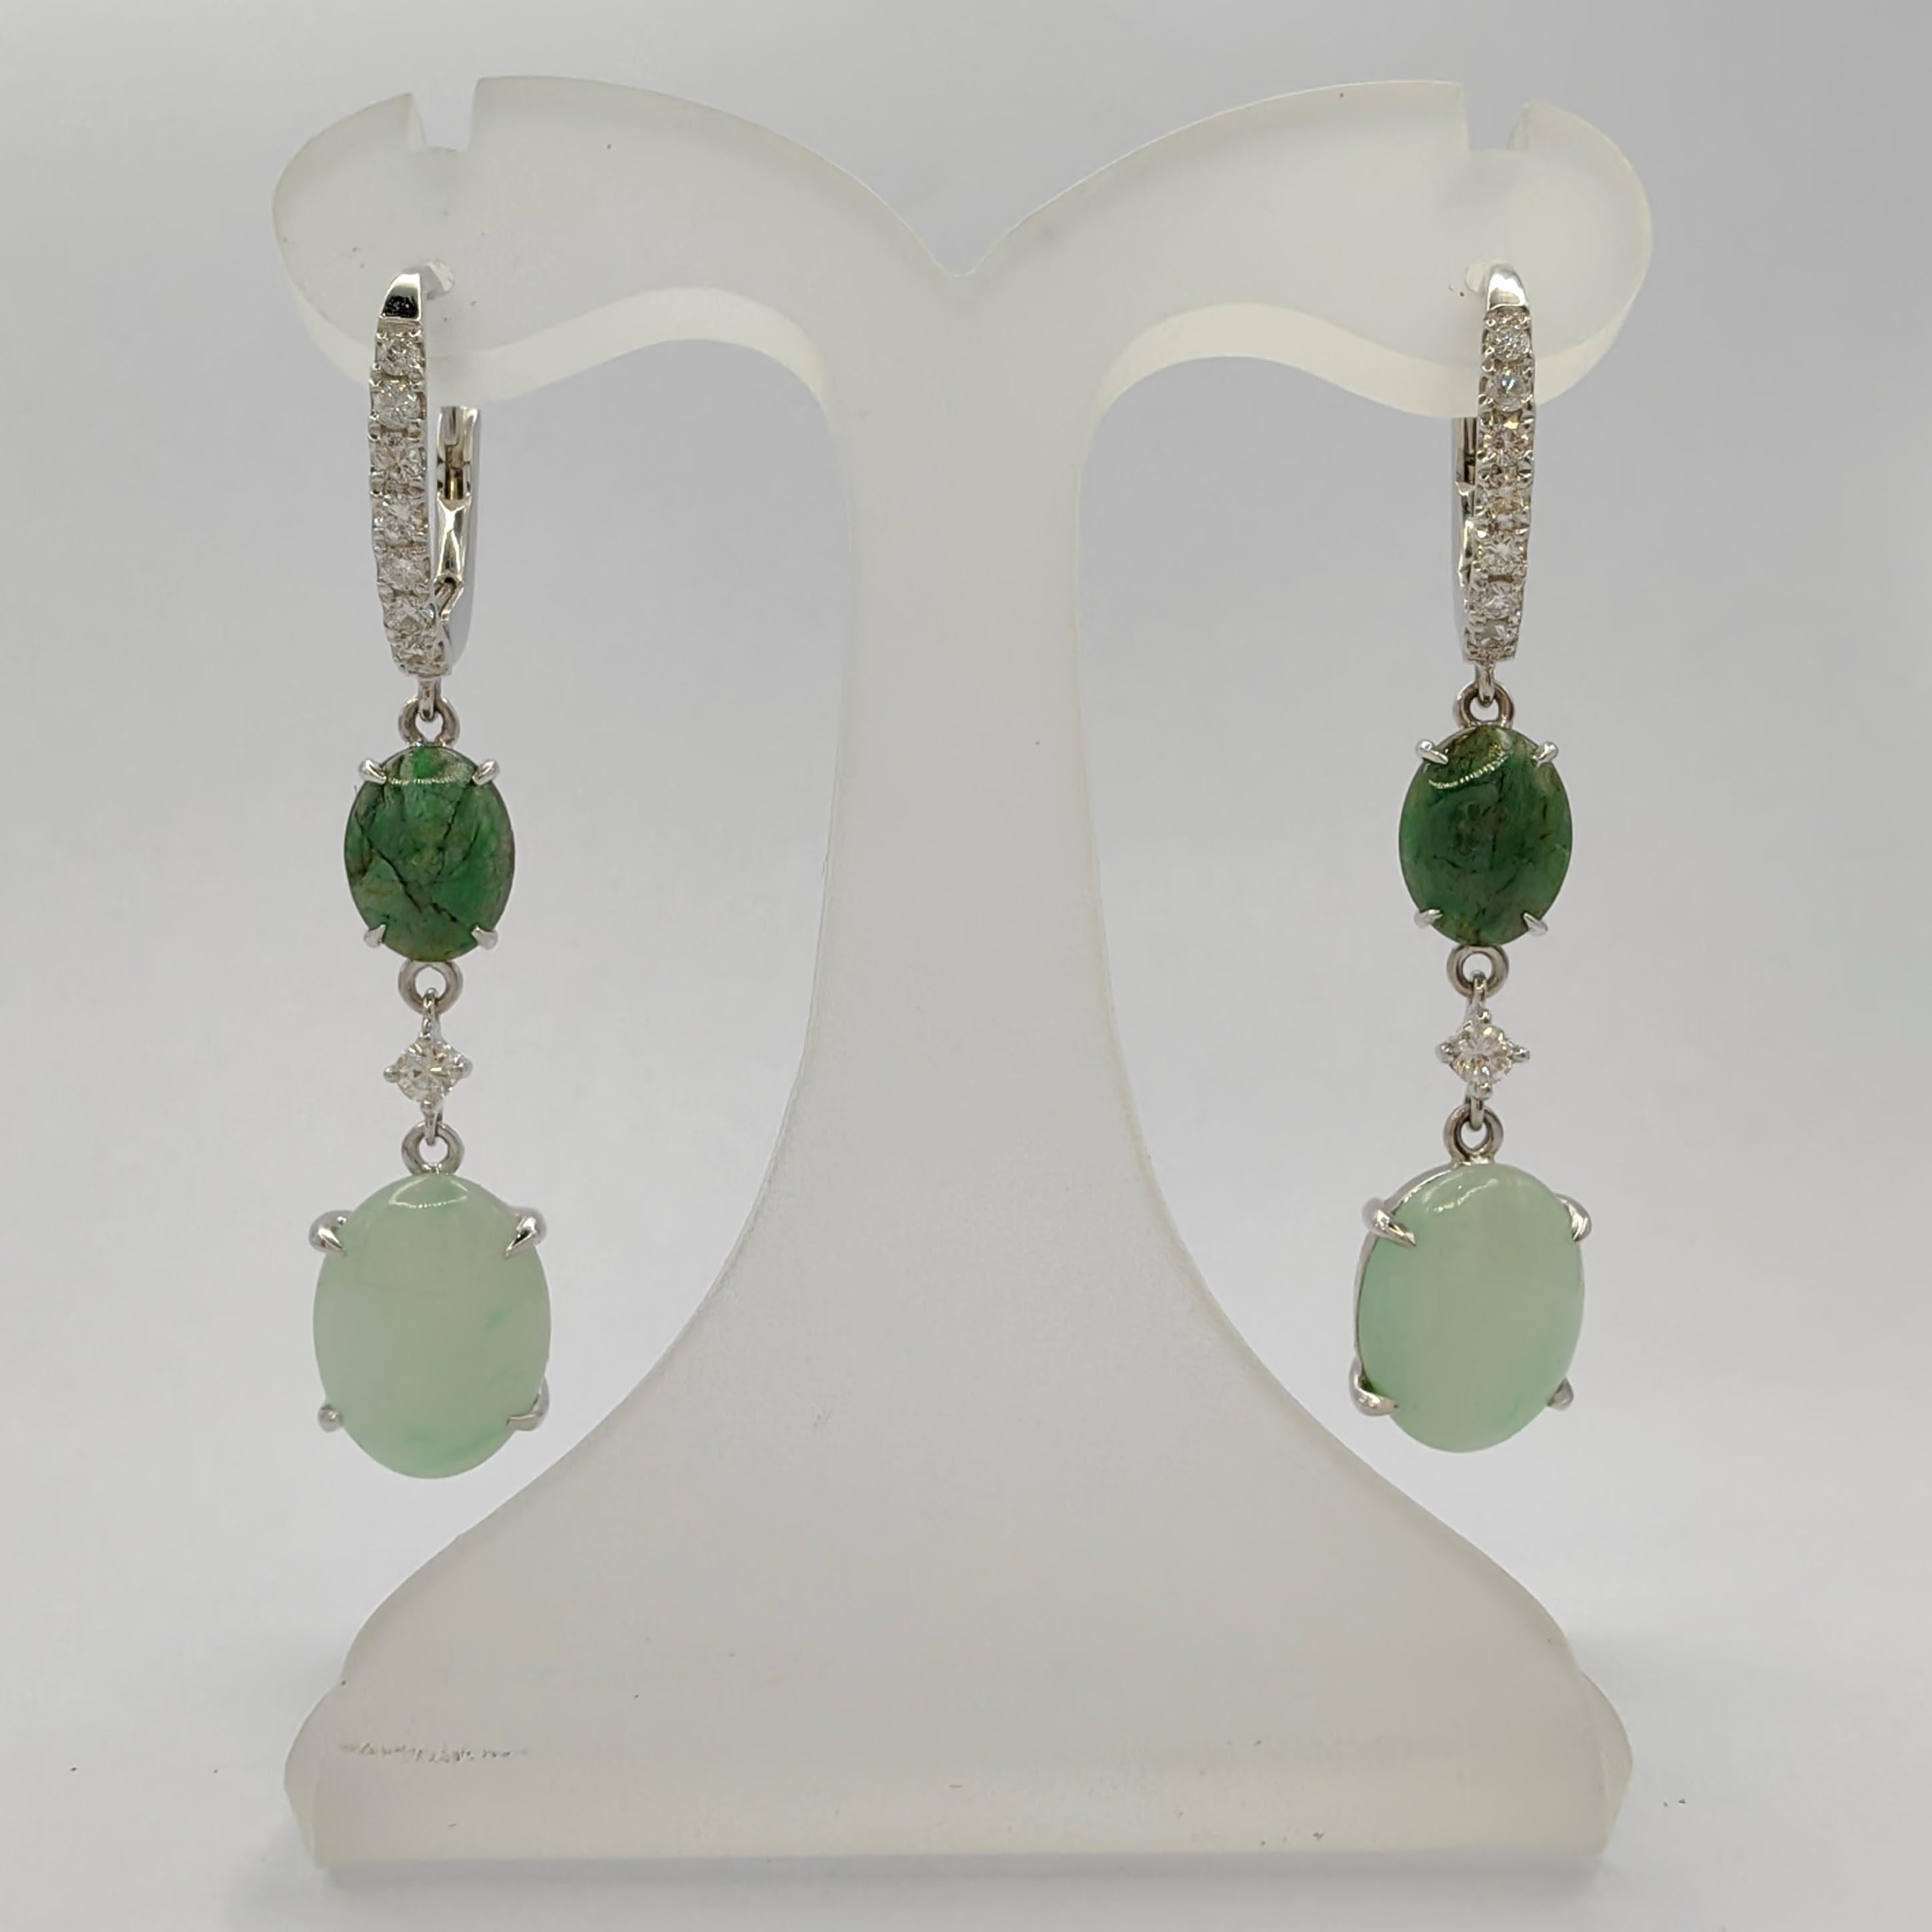 Unsere fesselnden hell- und tiefgrünen burmesischen Jadeit-Jade-Diamant-Ohrringe aus 18-karätigem Gold sind ein faszinierender Ausdruck von Eleganz und Raffinesse. Das einzigartige Design dieser Ohrringe besteht aus 14 Diamanten, die elegant mit